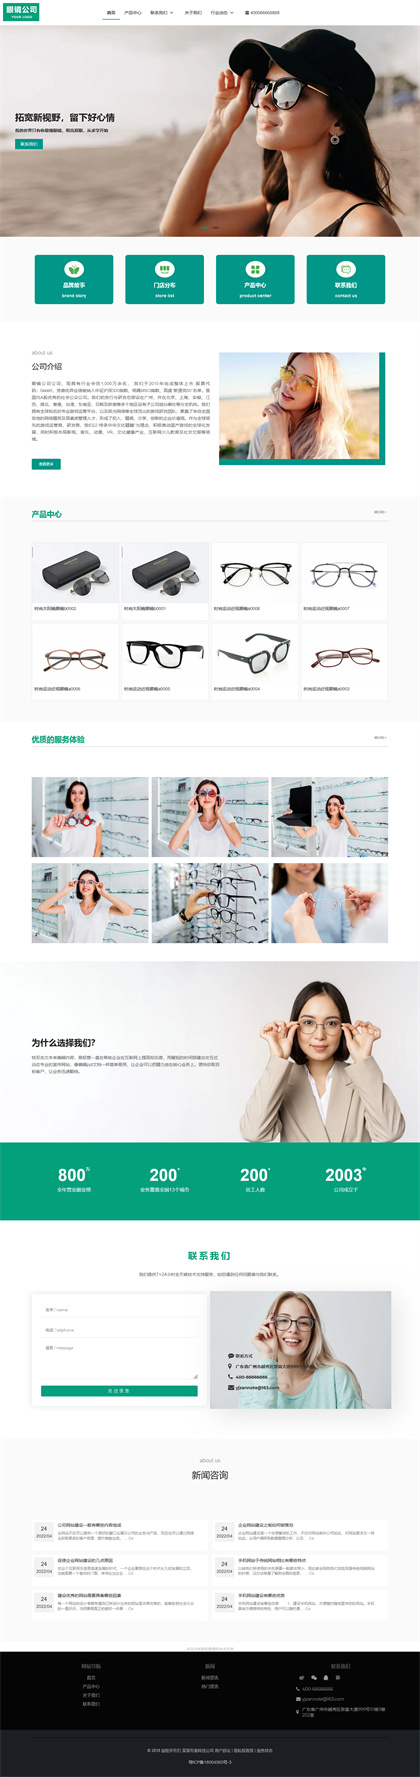 眼镜公司-太阳镜公司-近视眼镜-网站模板网站模板预览图片